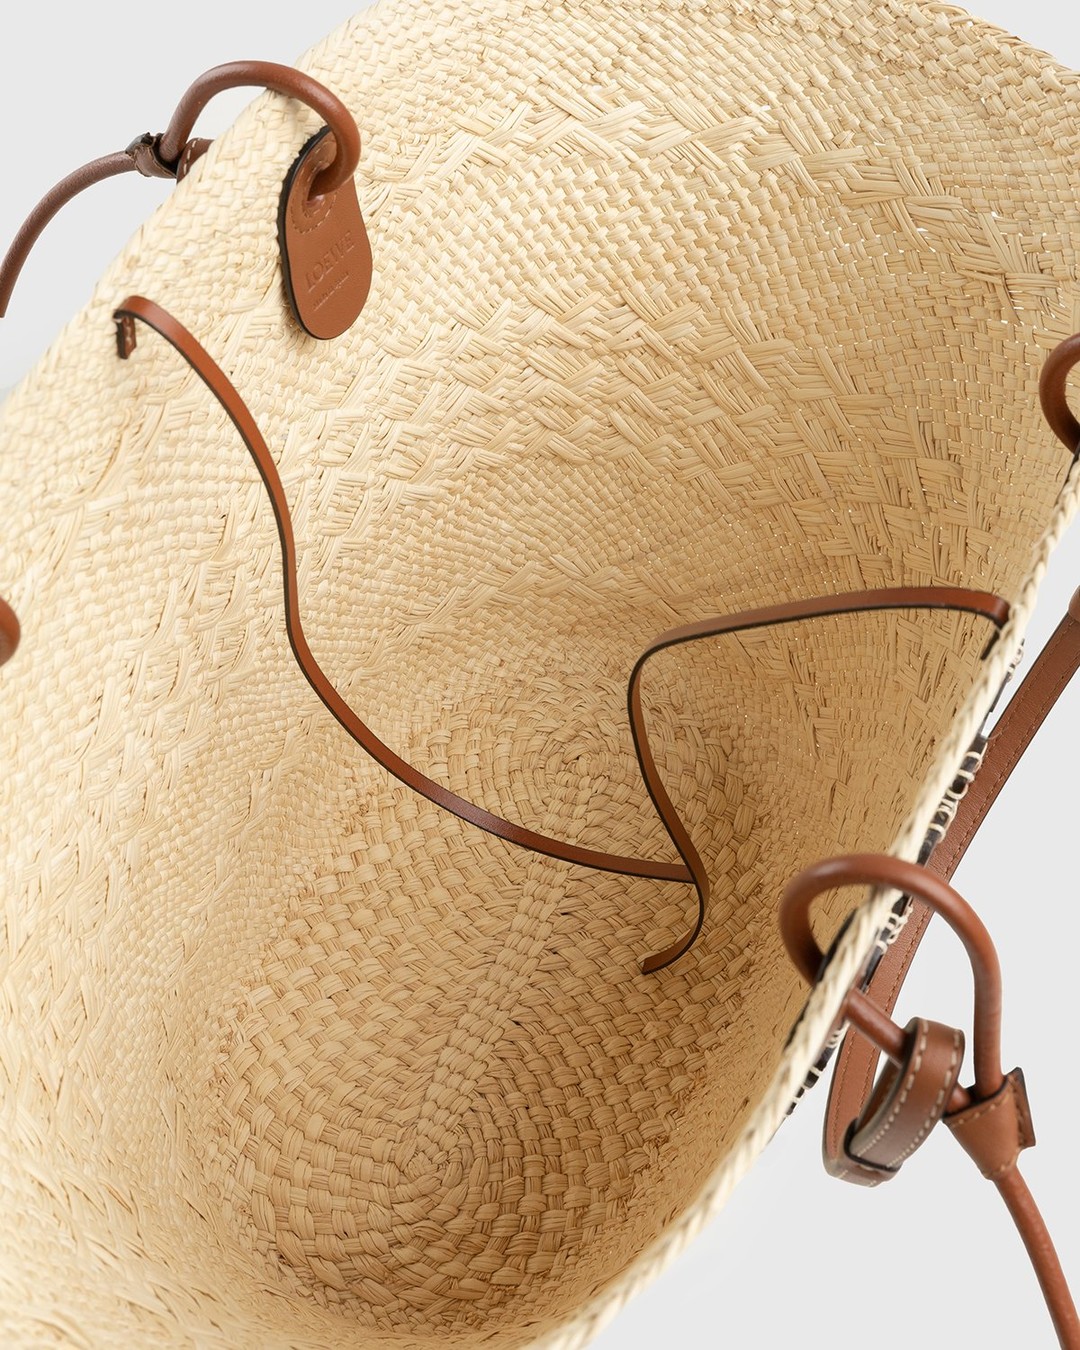 Loewe – Paula's Ibiza Anagram Basket Bag Natural/Tan - Shoulder Bags - Beige - Image 4